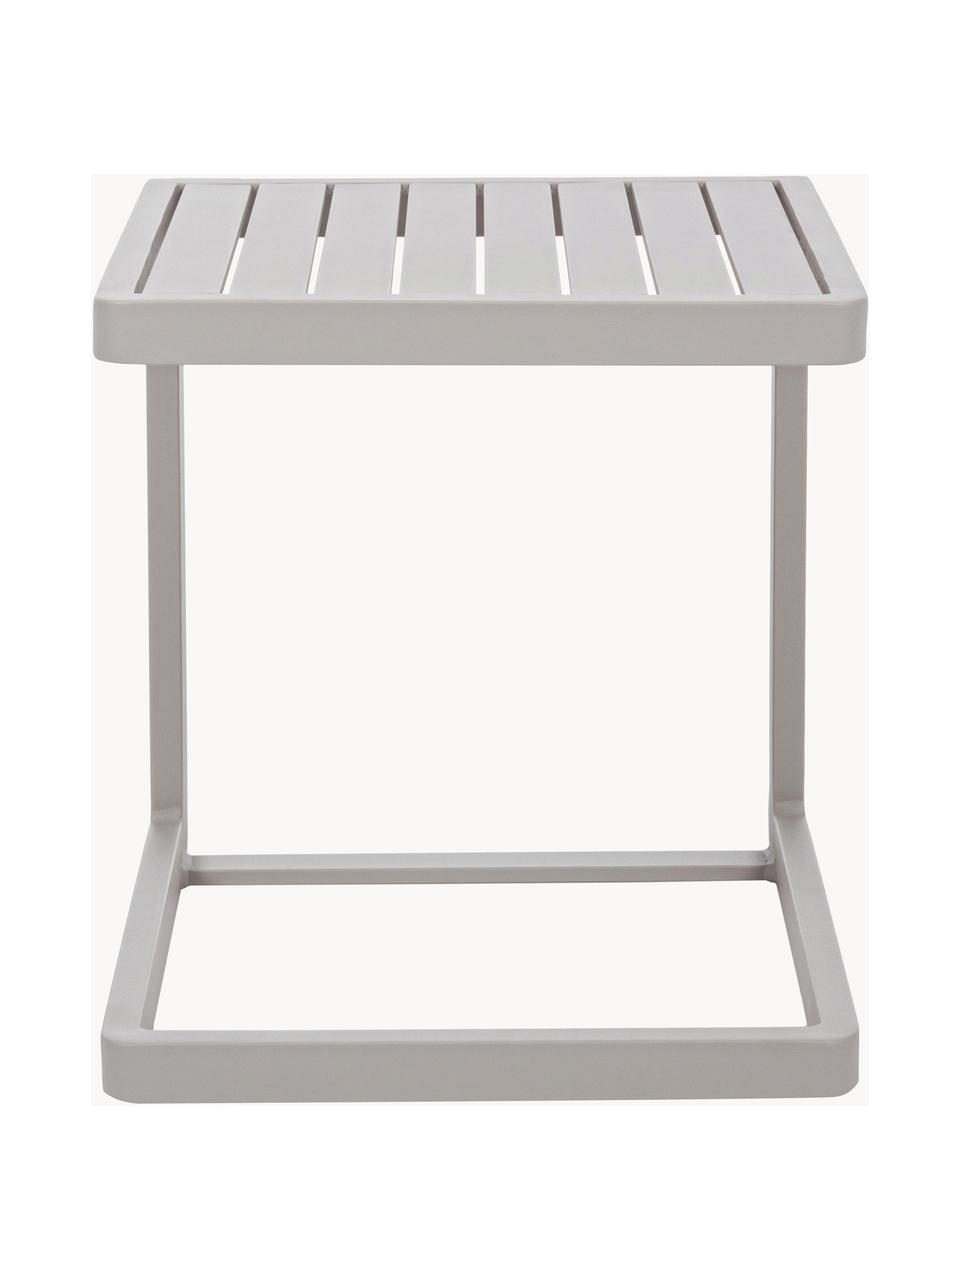 Ogrodowy stolik pomocniczy Konnor, Aluminium malowane proszkowo, Jasny beżowy, matowy, S 45 x W 45 cm